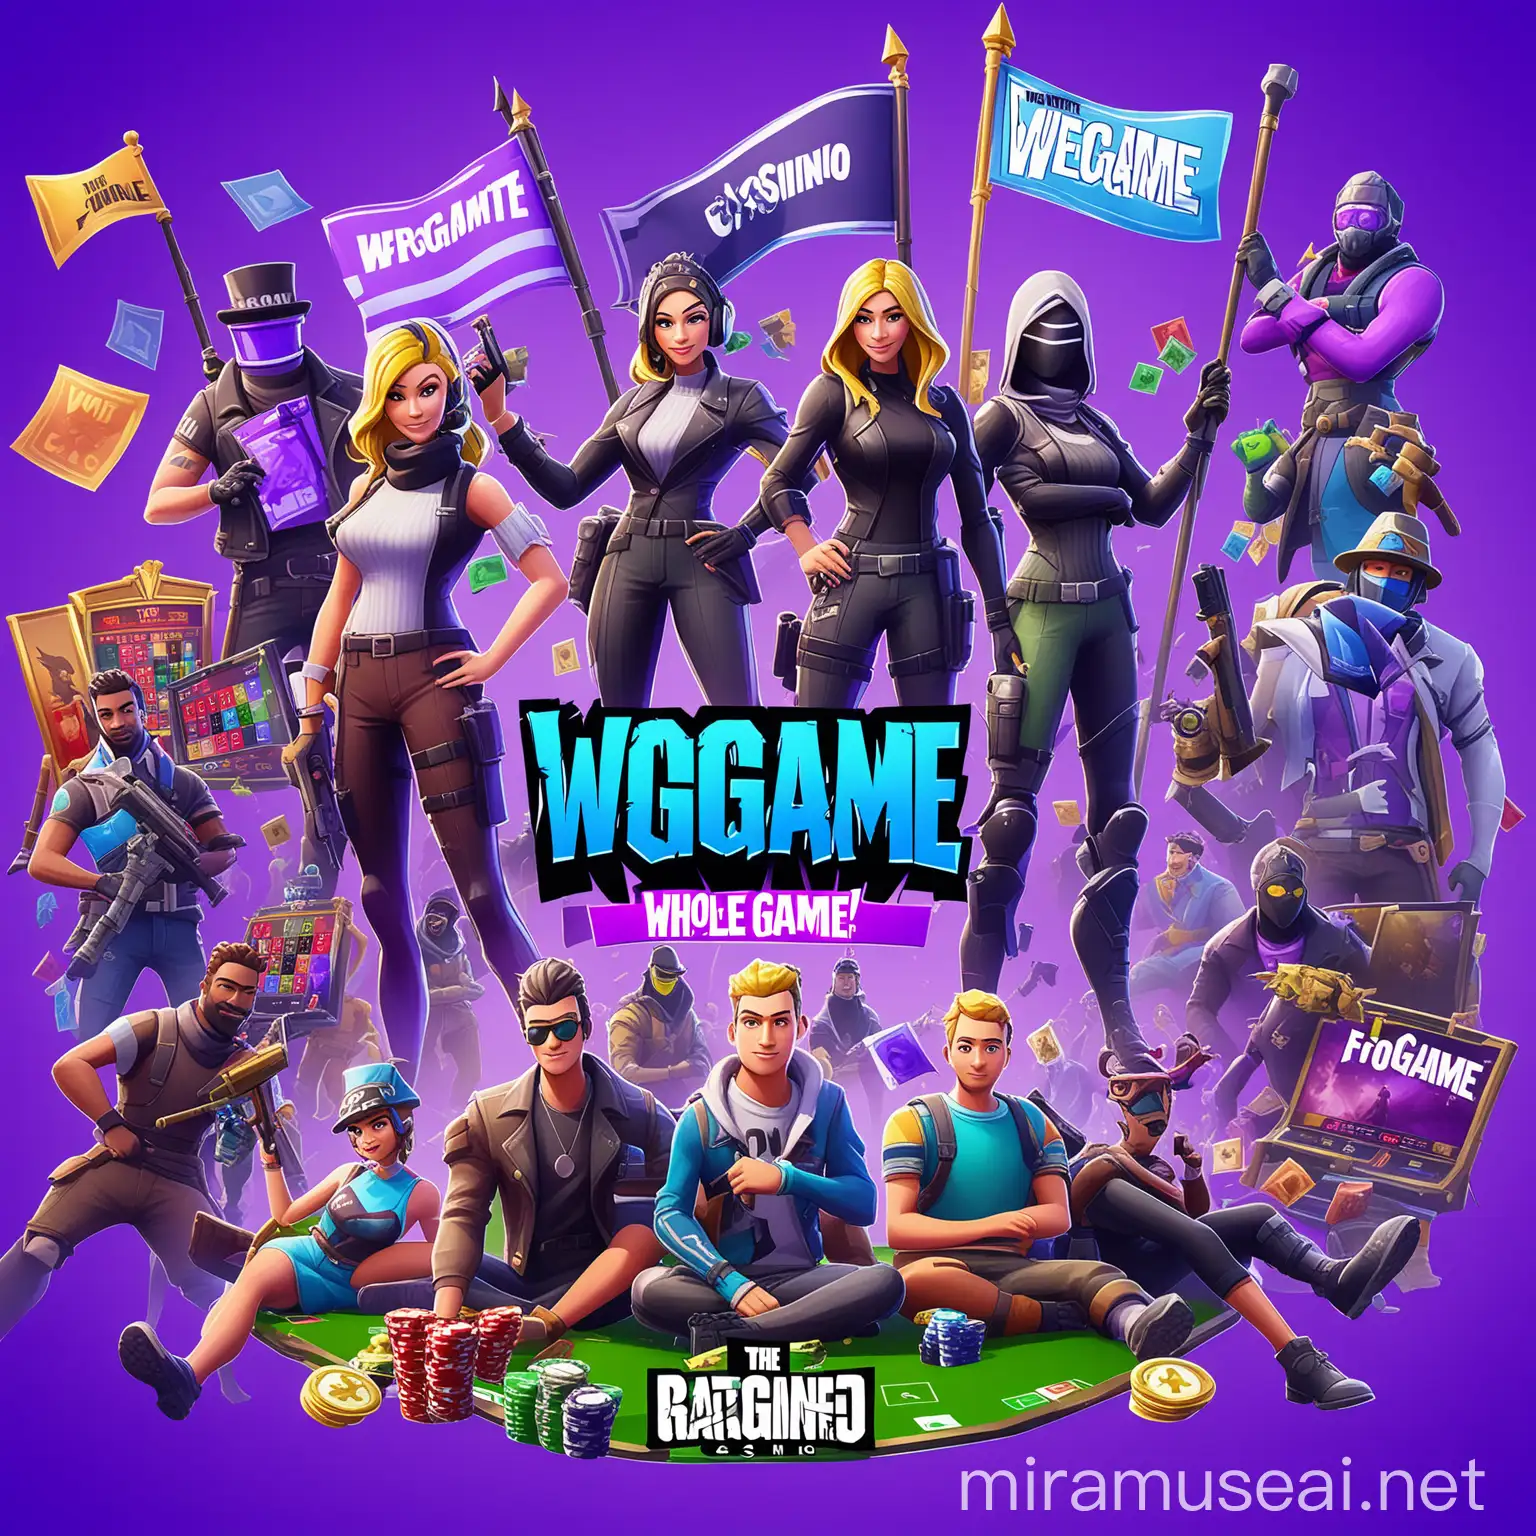 флаг на всю картинку, посредине надпись WeGame, онлайн игры, фортнайт, казино, 5 персонажей, цвета флага фиолетовый с голубым